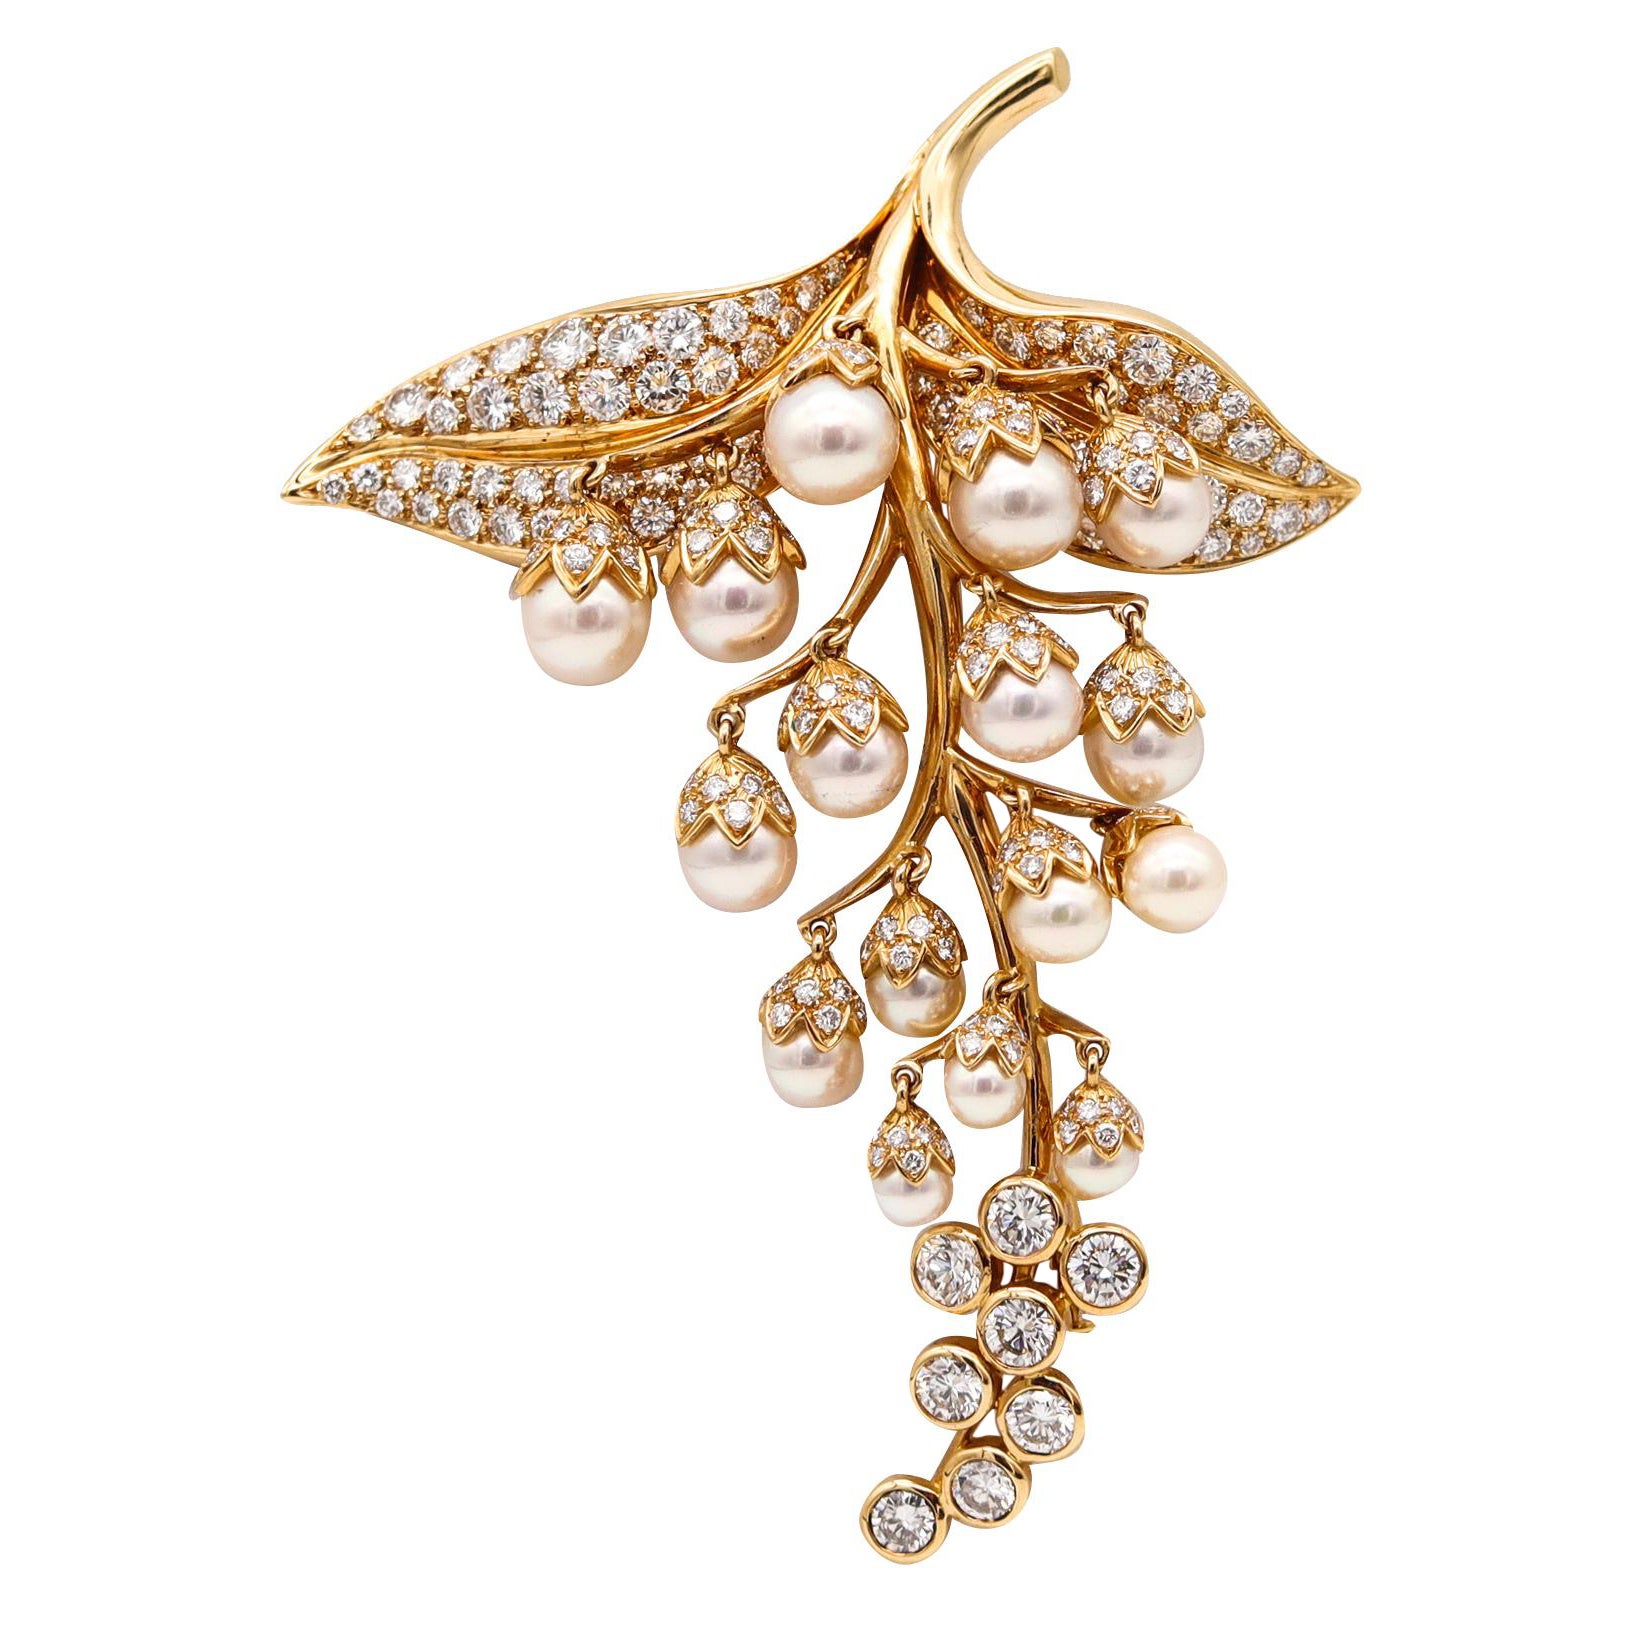 Rene Boivin Paris Edelstein-Brosche aus 18 Karat Gold mit 14,09 Karat Diamanten und Perlen